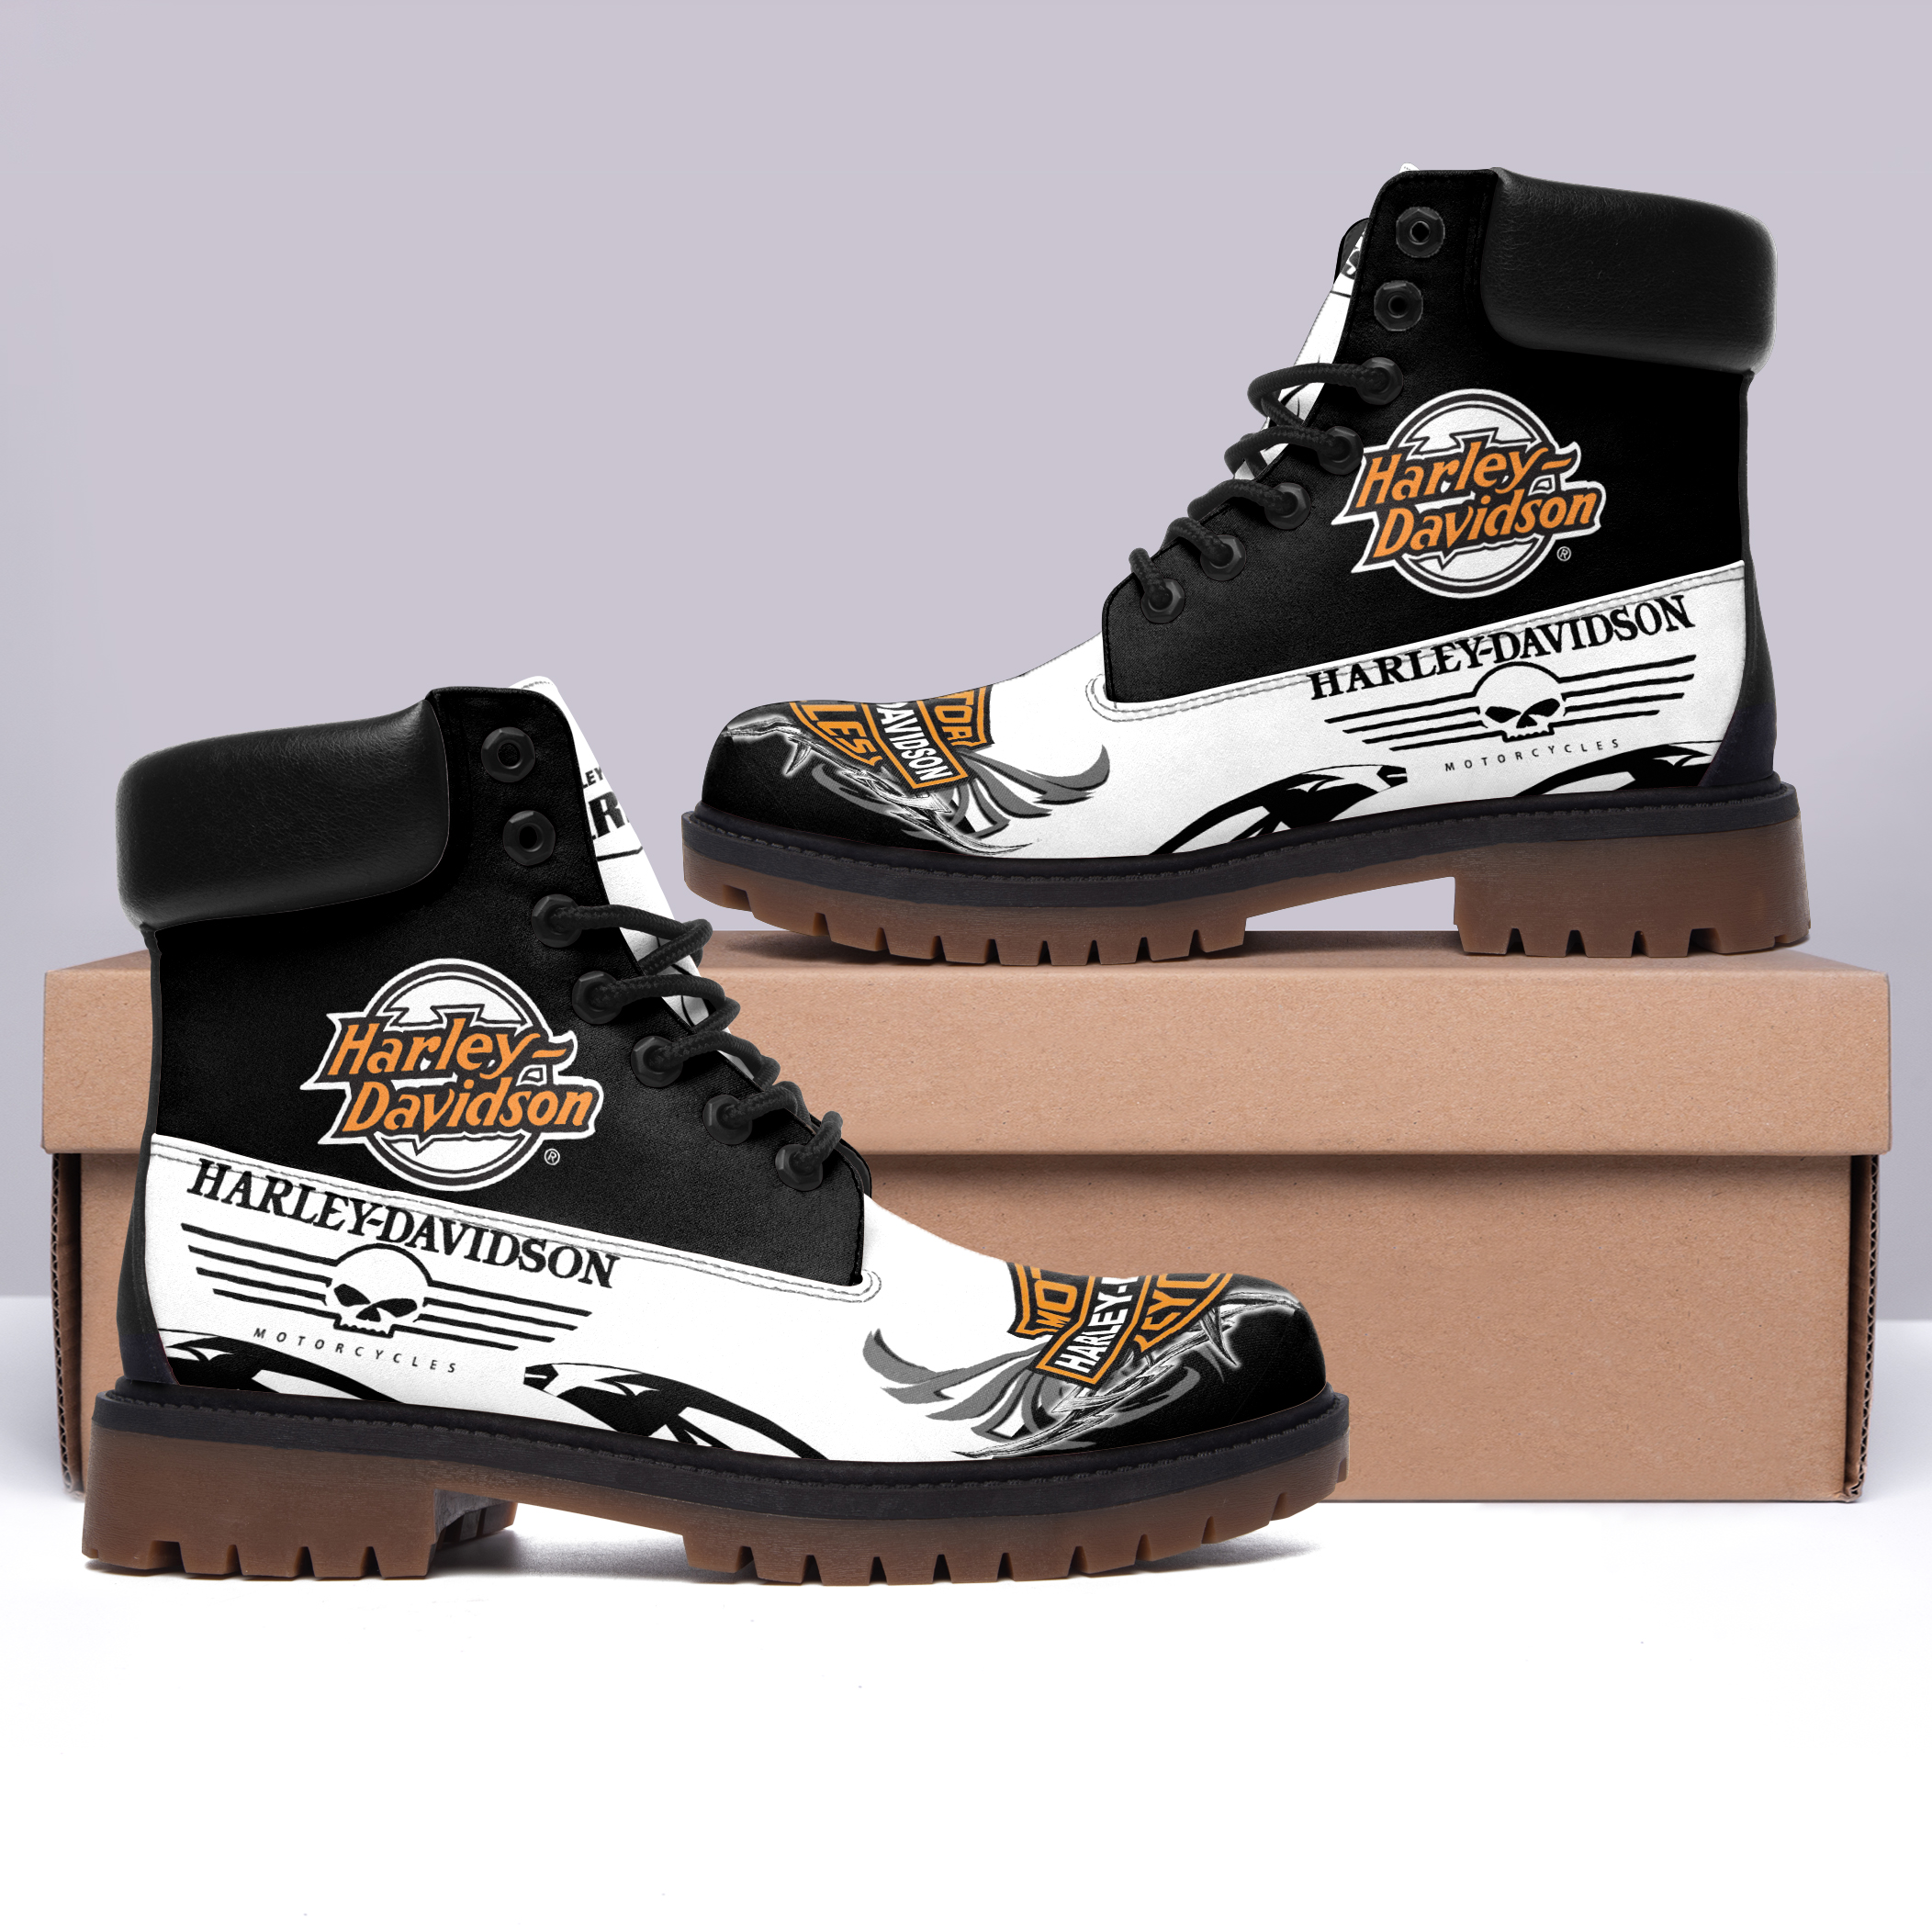 Harley Davidson Timberland Boots 11 - CreatedOnSun